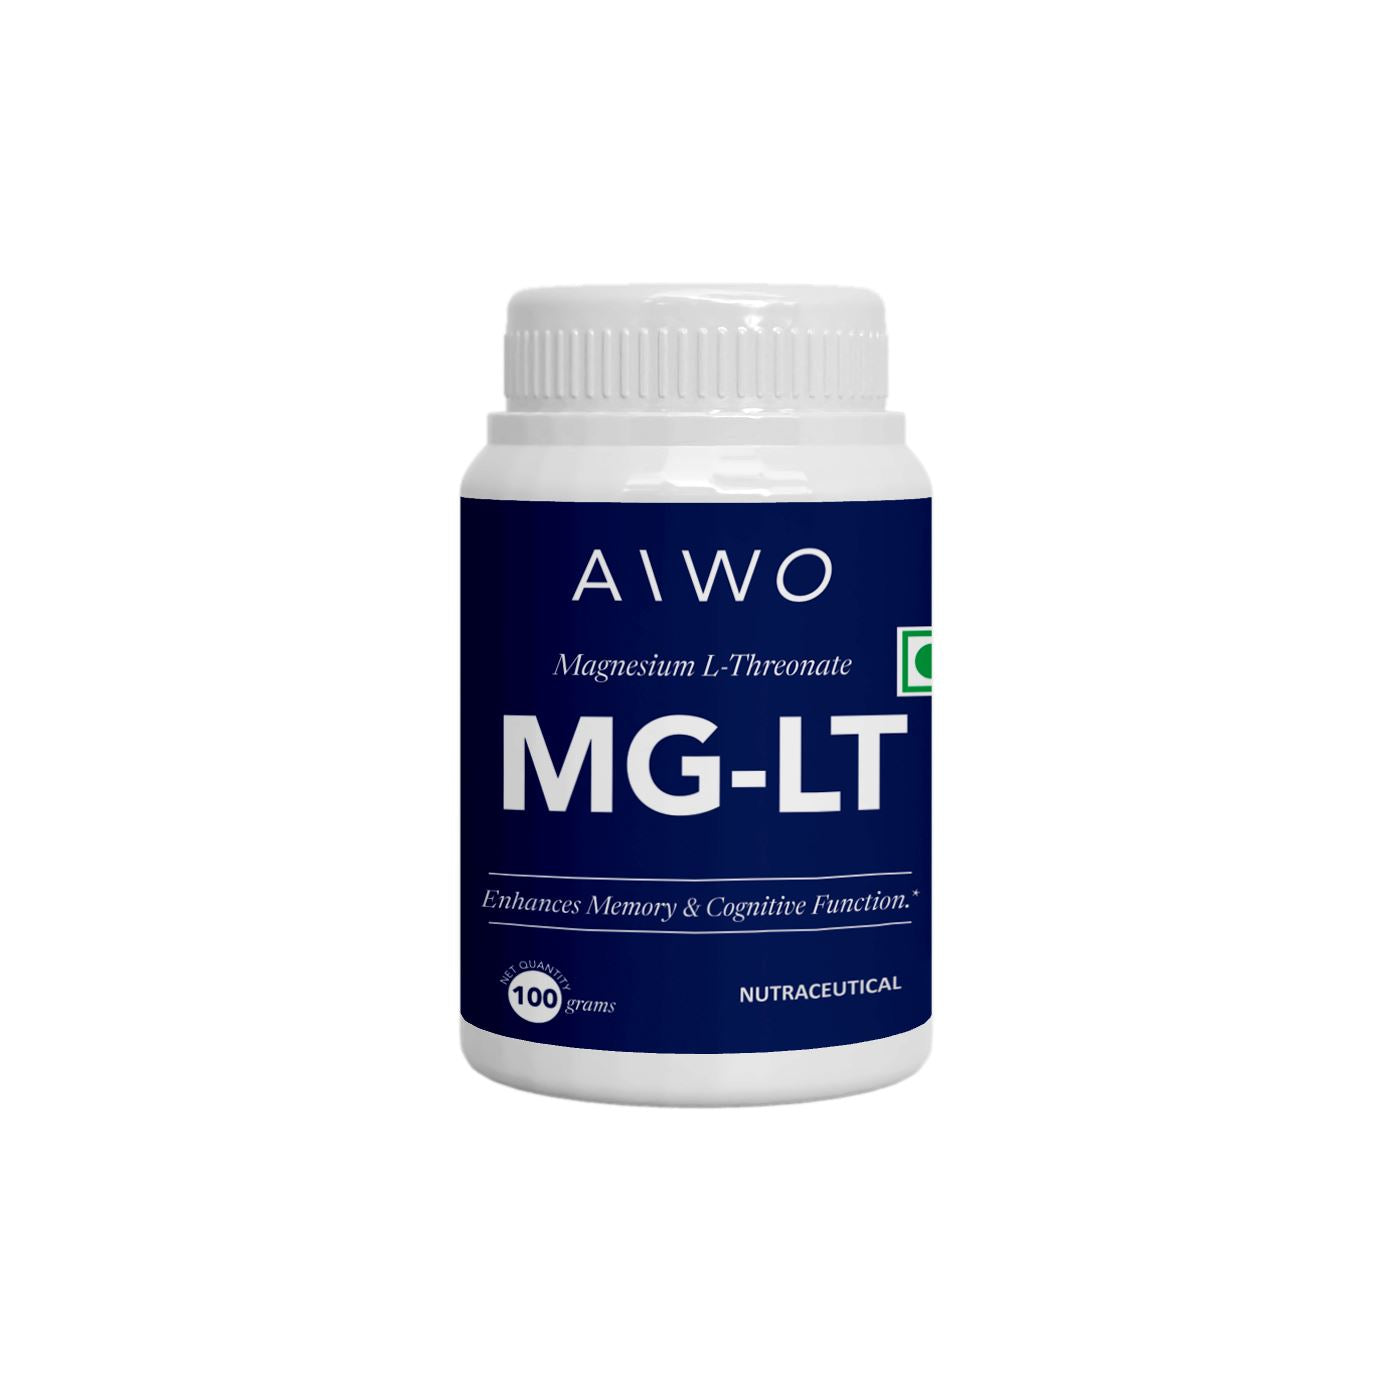 MyDiagnostics Aiwo Mg -LT 250gms